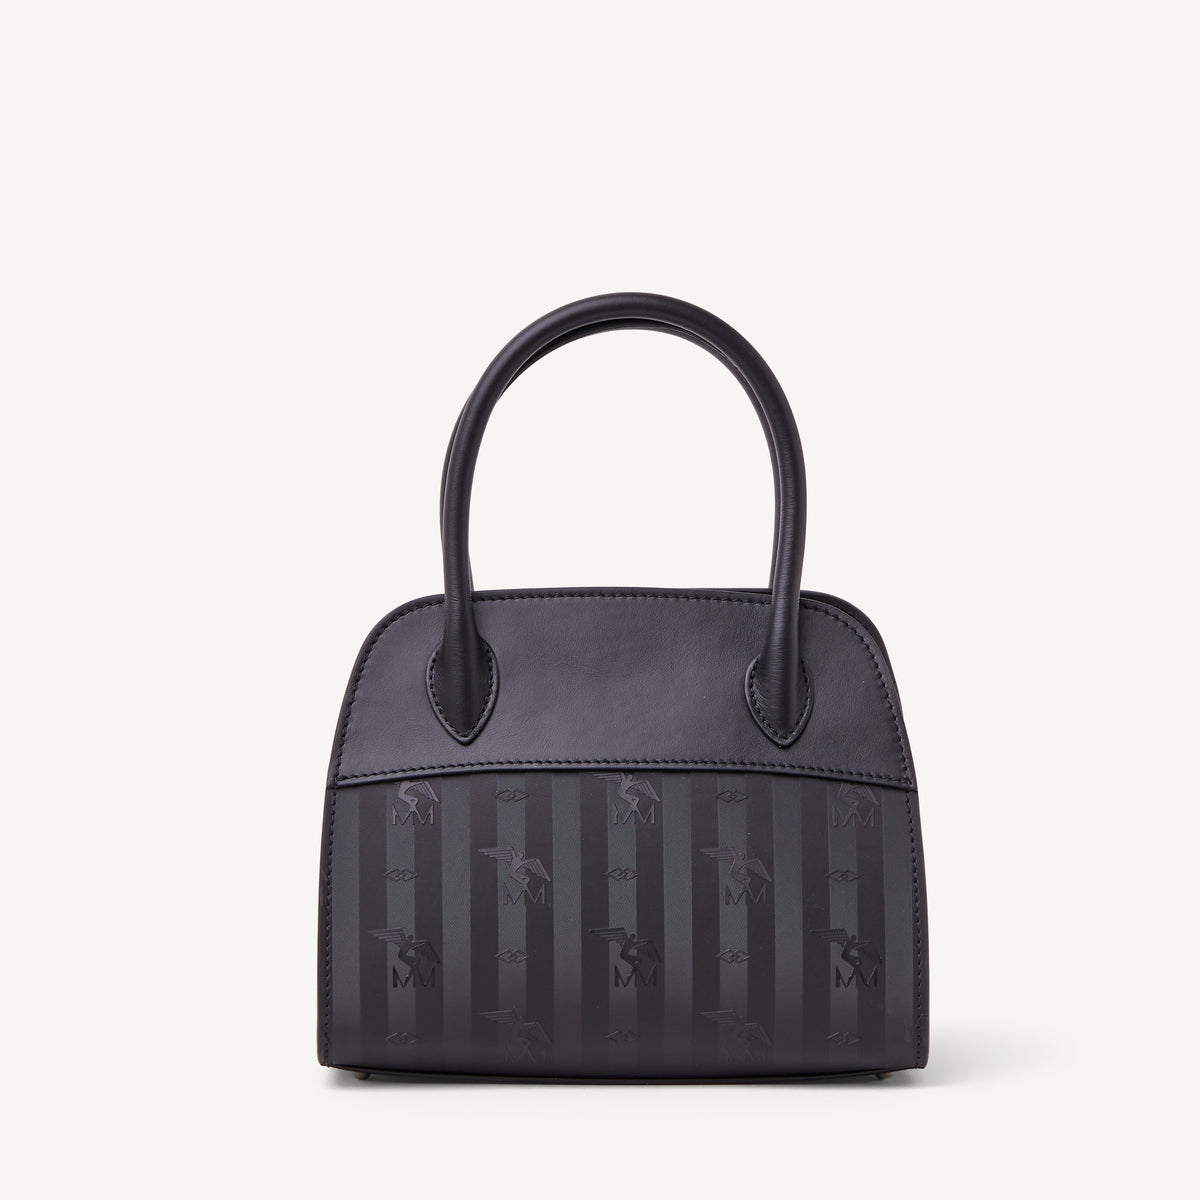 SOGLIO | Handtasche classic schwarz/silber - von hinten